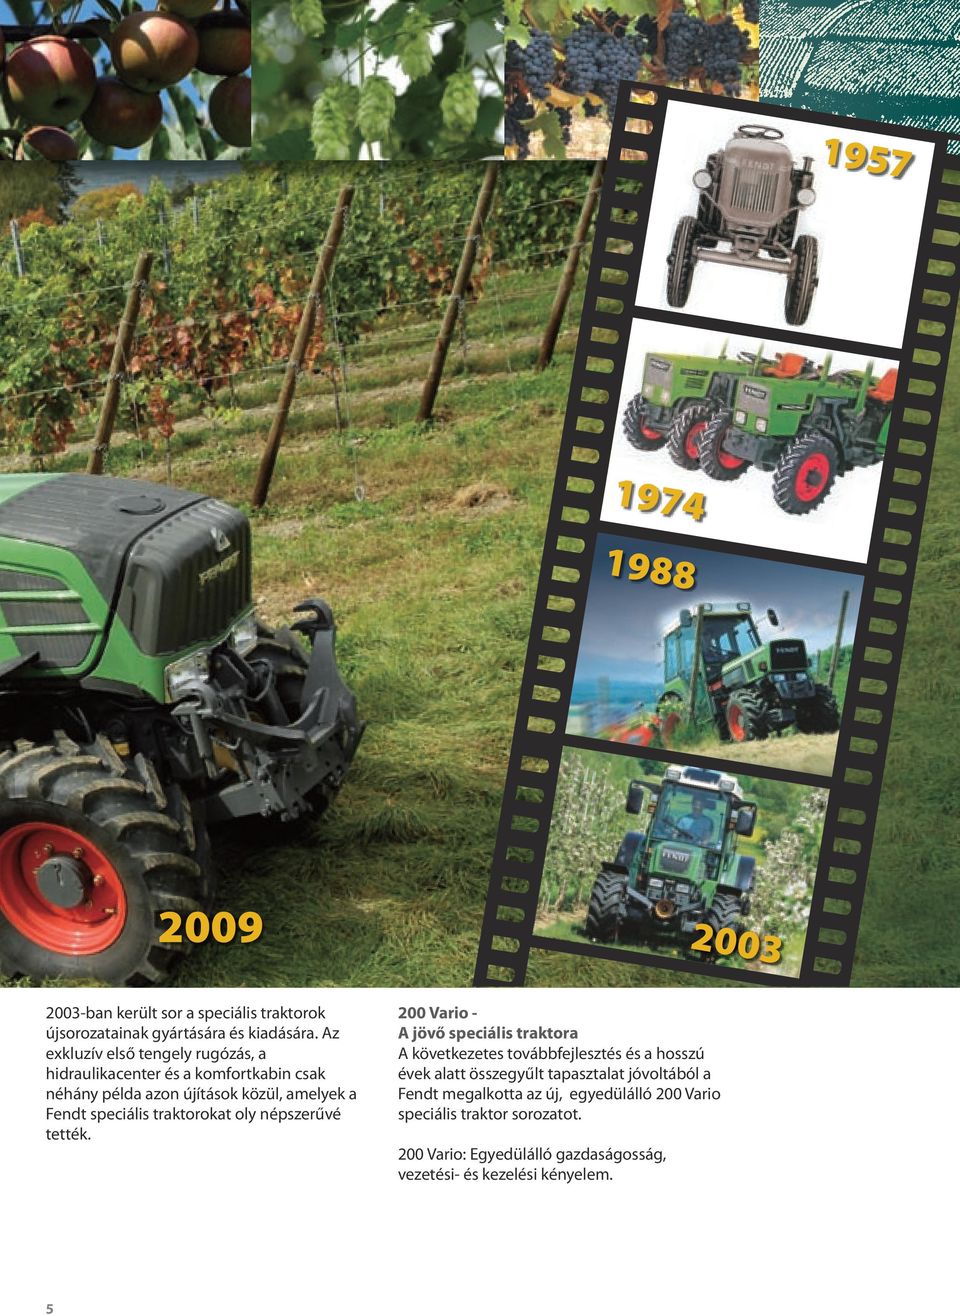 speciális traktorokat oly népszerűvé tették.